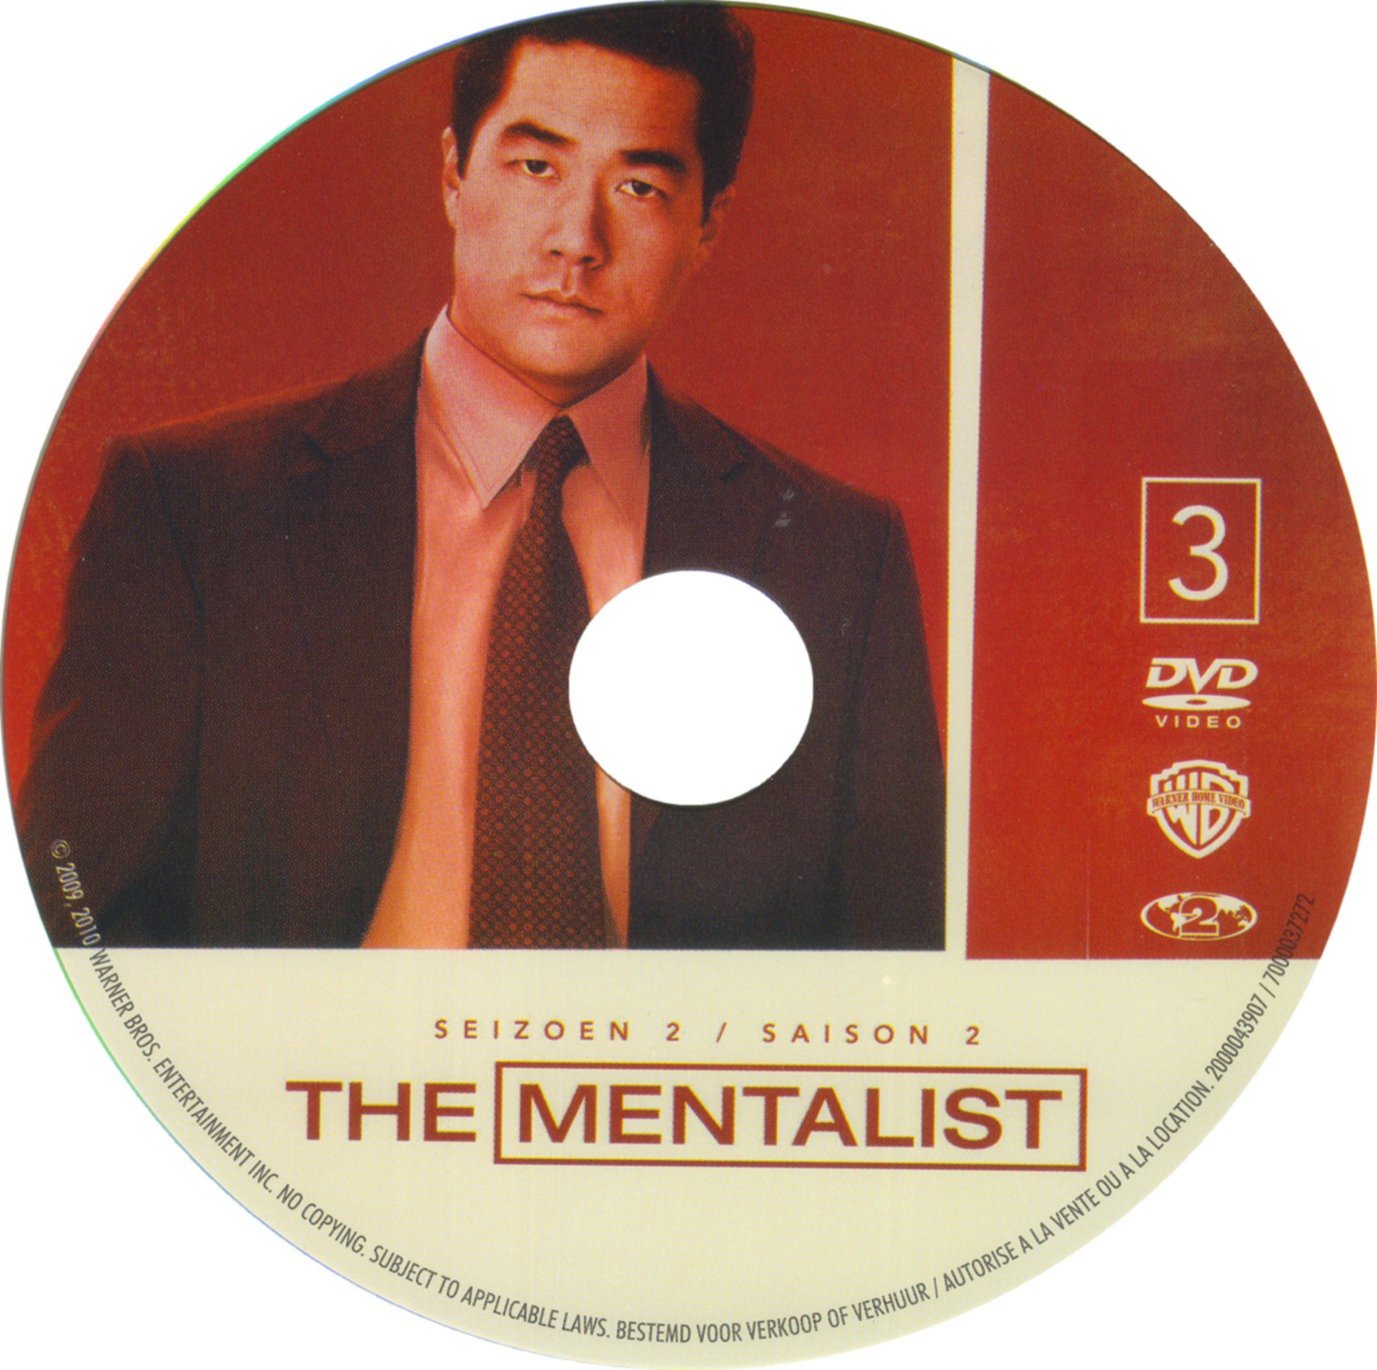 The mentalist Saison 2 DISC 3